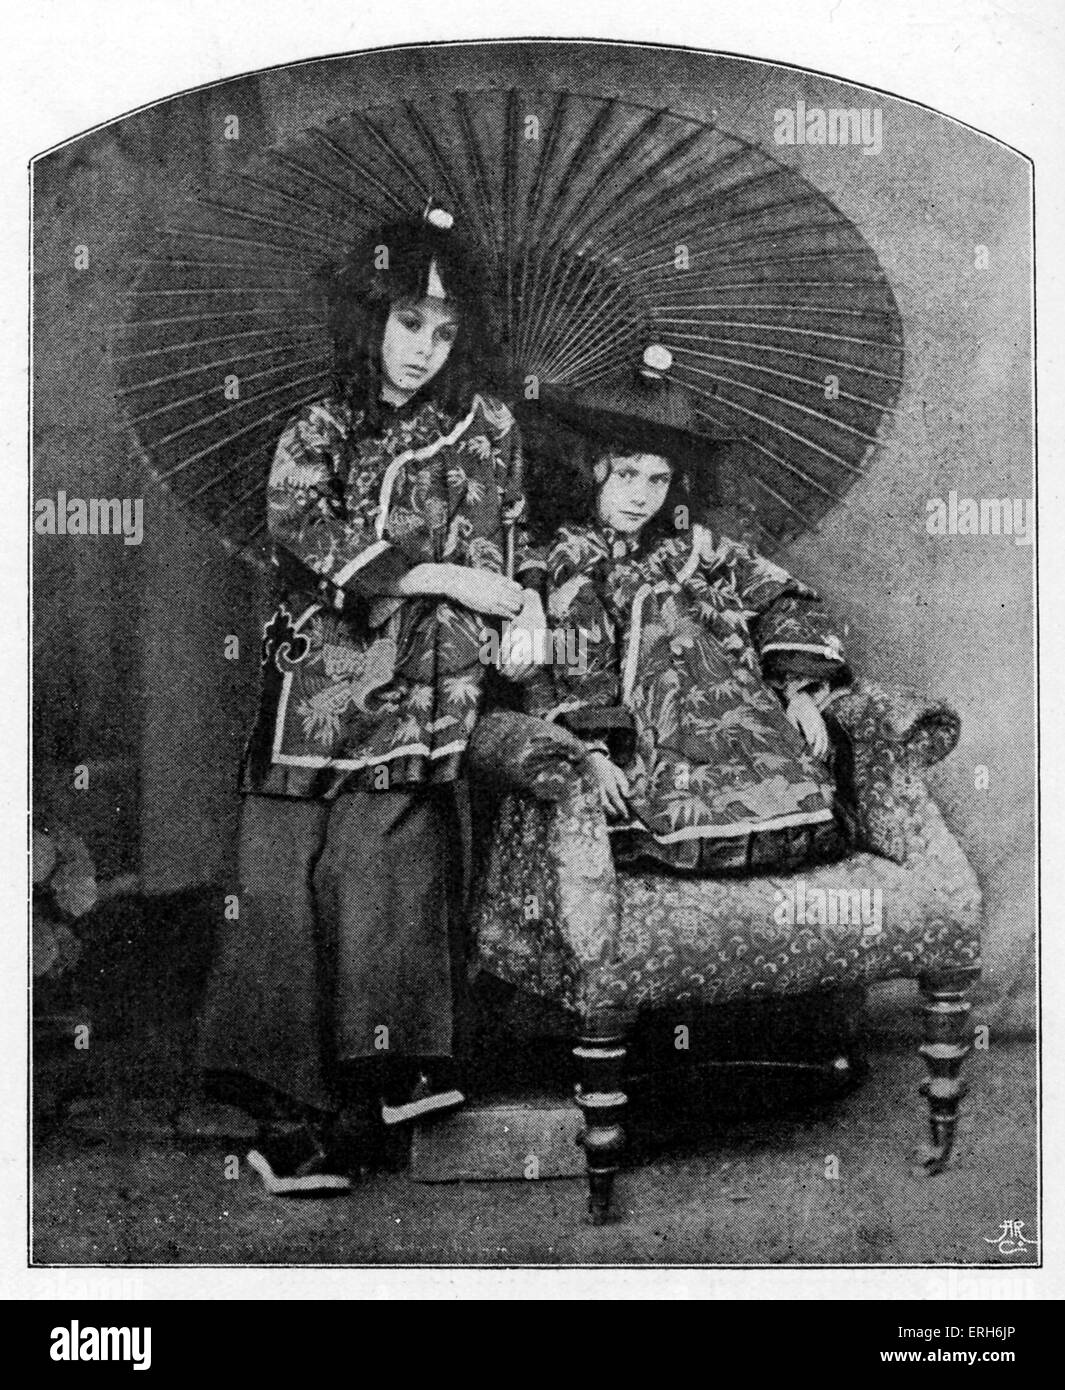 Les enfants Liddell - photographie prise par Lewis Carroll. De gauche à droite : Alice Liddell et Lorina dans 'Chinese' costume. Les enfants de Banque D'Images